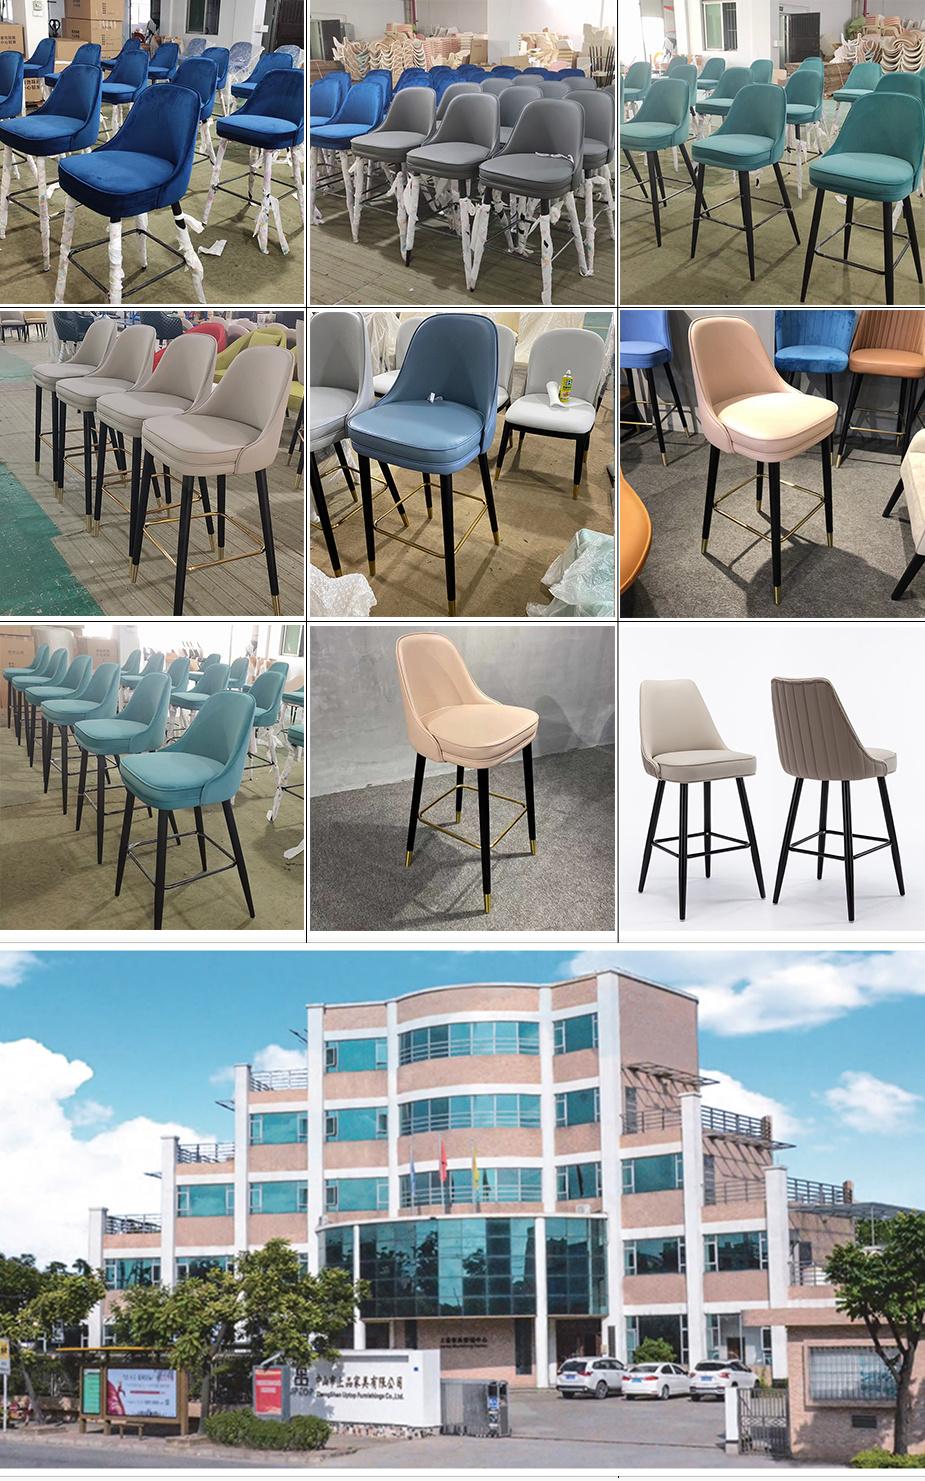 2022 New Design Bar Chairs Bar Stool High Chair Modern Bar Stool Chairs